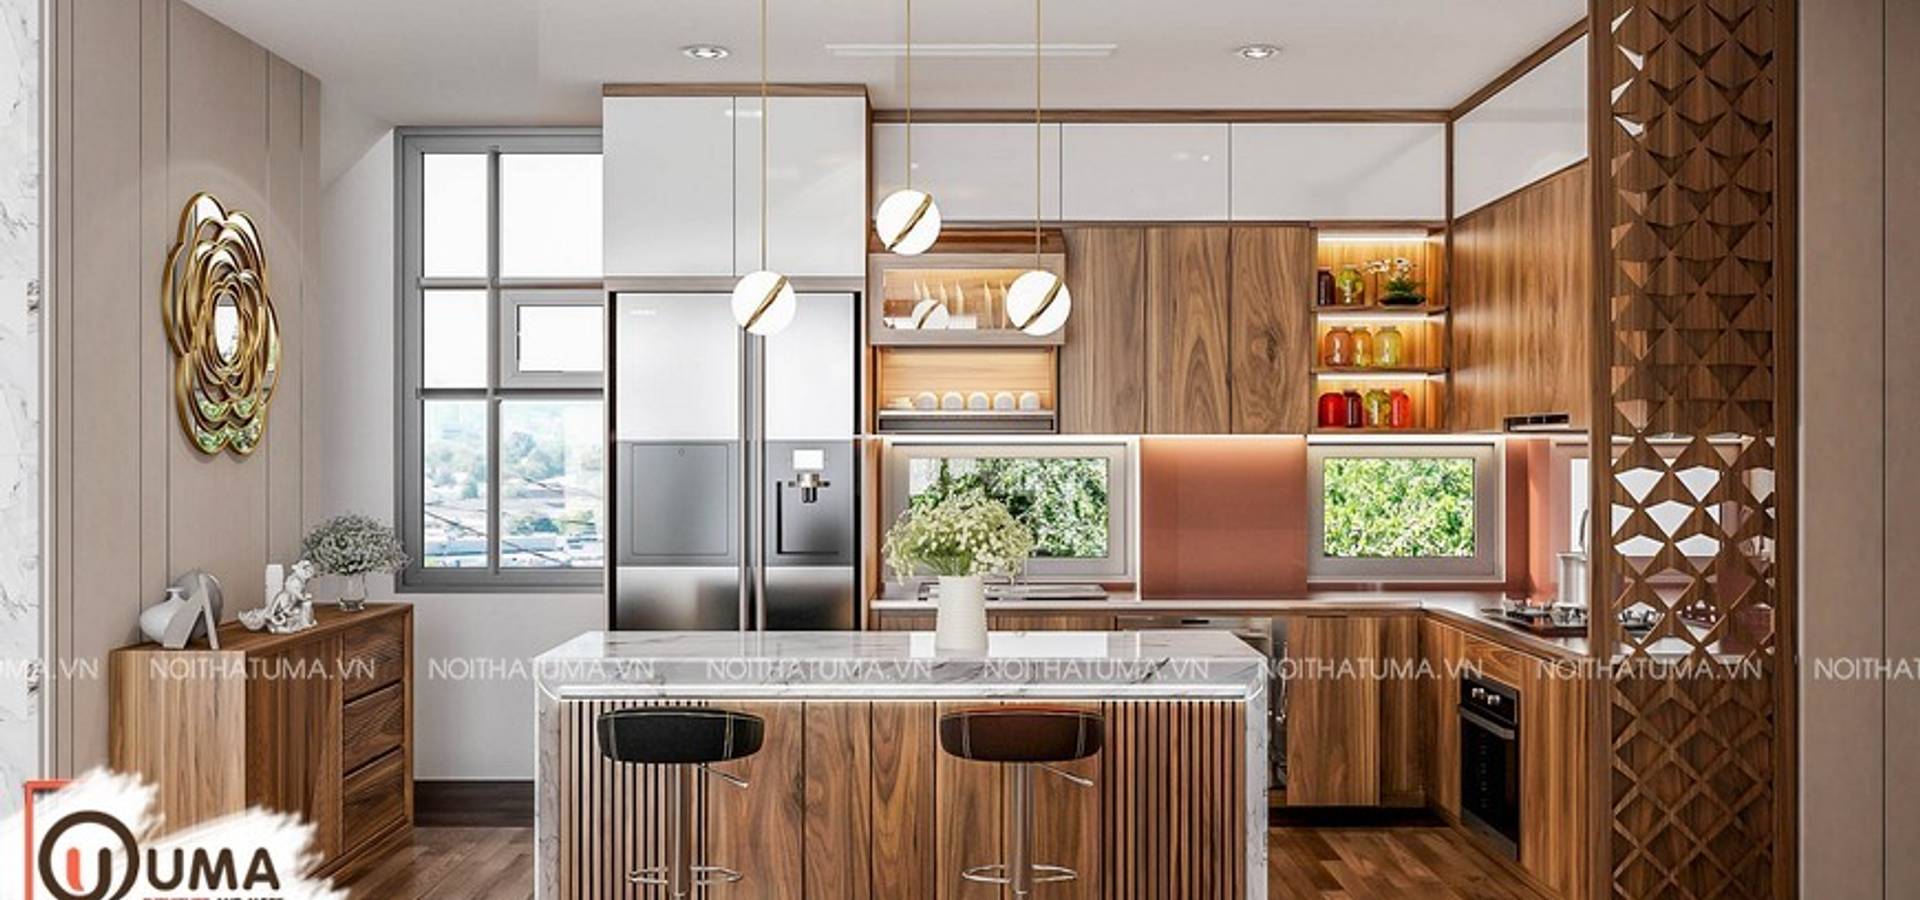 Tủ Bếp Nattifi – UNA 05 là một sản phẩm tủ bếp hiện đại và đẳng cấp. Với thiết kế tinh tế, tiện nghi và sang trọng, tủ bếp này sẽ mang đến cho căn nhà của bạn một không gian nấu ăn hoàn hảo. Xem hình ảnh liên quan để cảm nhận sự tinh tế và độc đáo của Tủ Bếp Nattifi – UNA